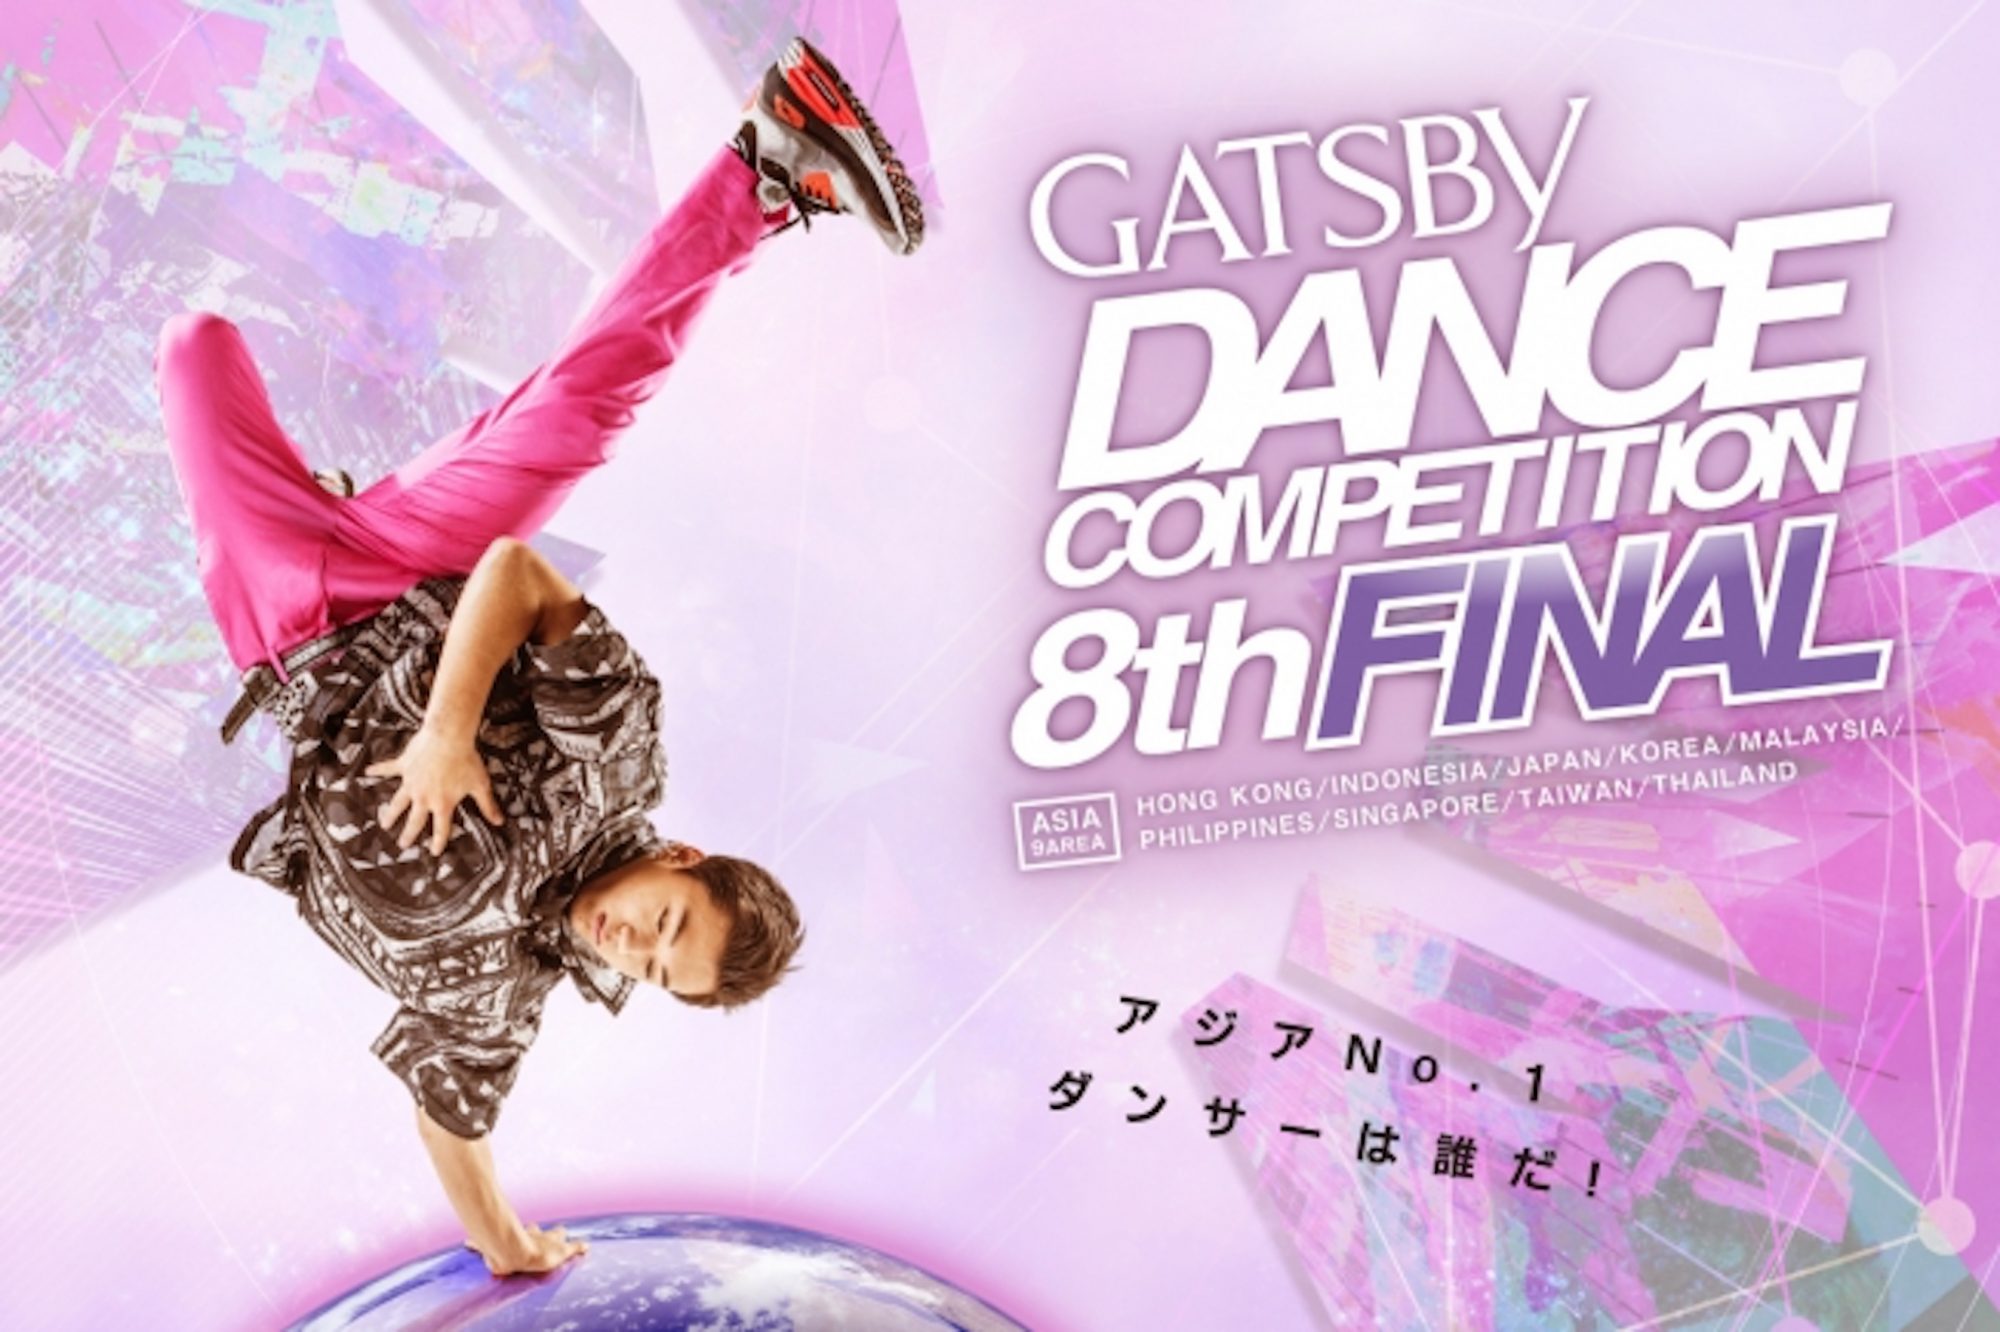 遂にアジアNo.1ダンサーが決定!!アジア最大級のダンスコンテスト「GATSBY DANCE COMPETITION 8th」ASIA GRAND FINAL開催！